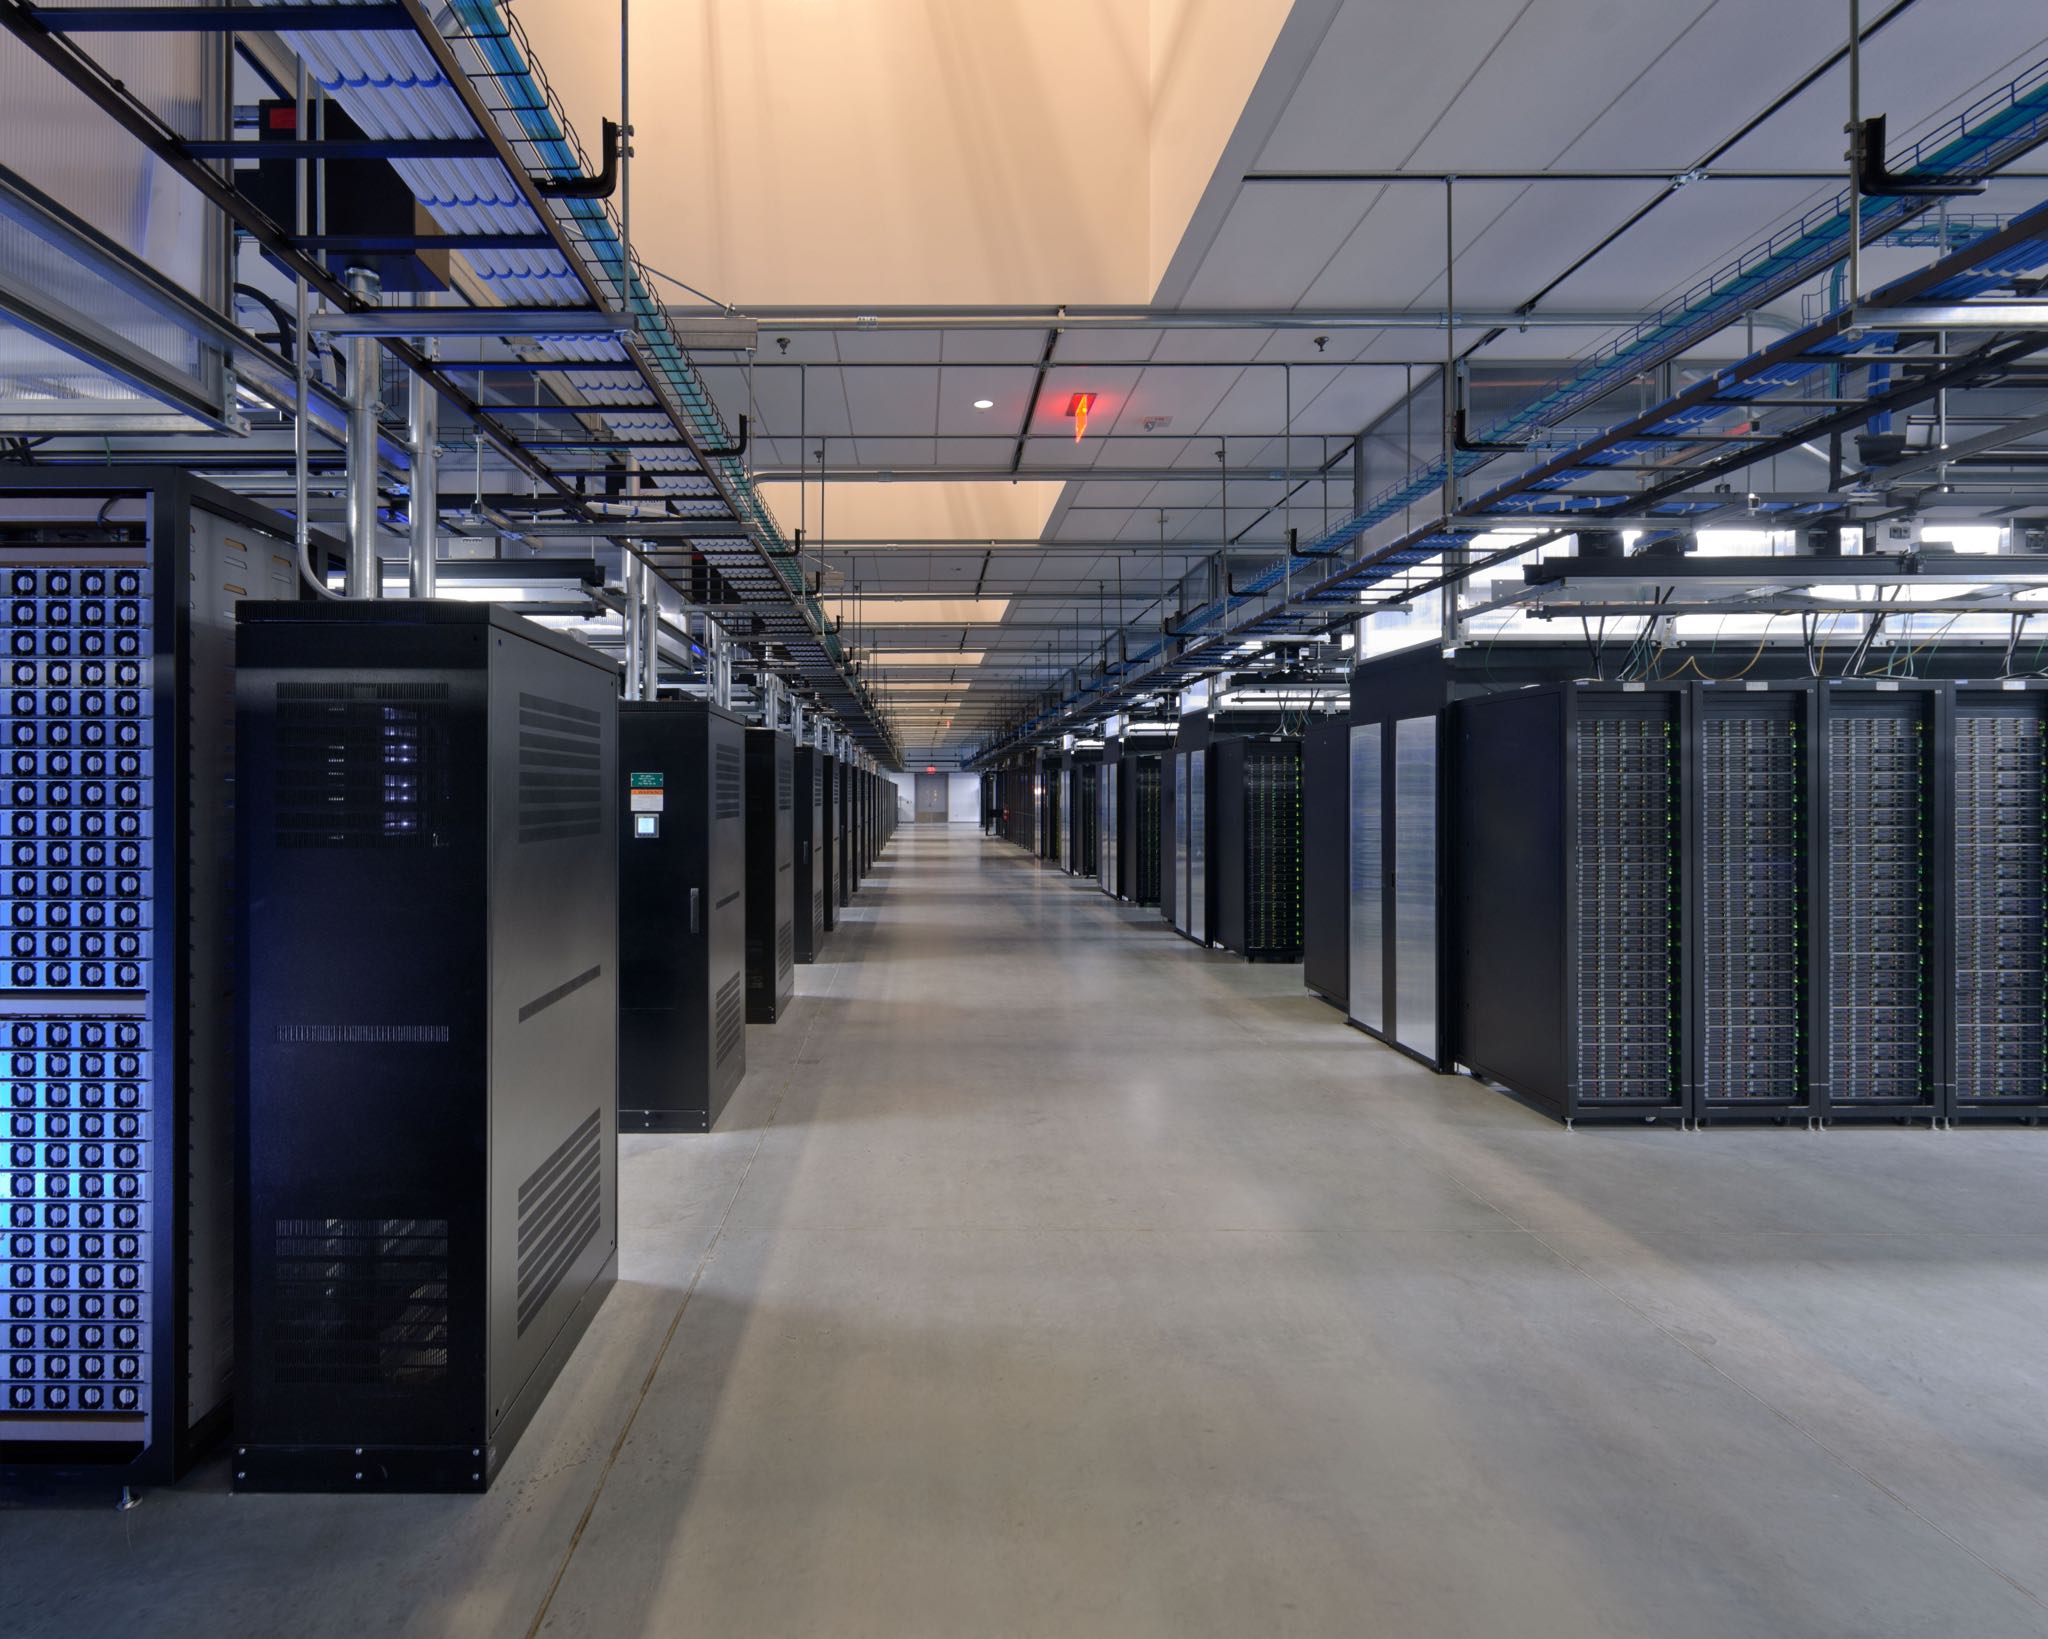 Facebook Prineville data center server room image 001